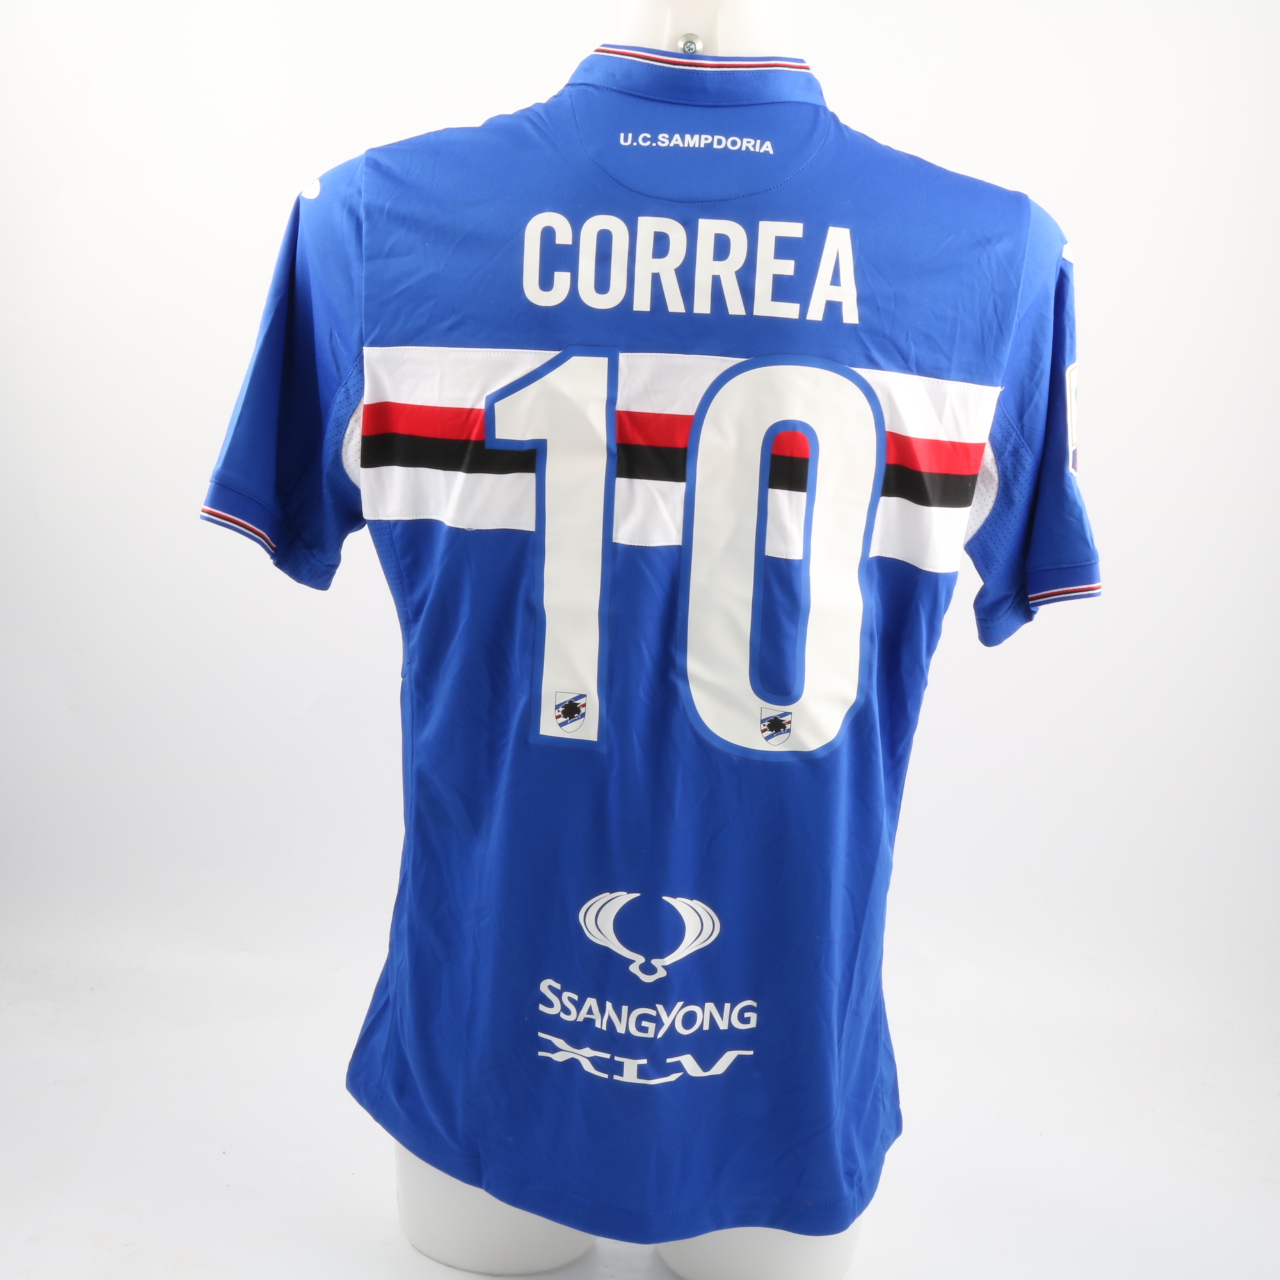 Maglia Correa, preparata Sampdoria-Genoa, Serie A 8/5/16 - CharityStars